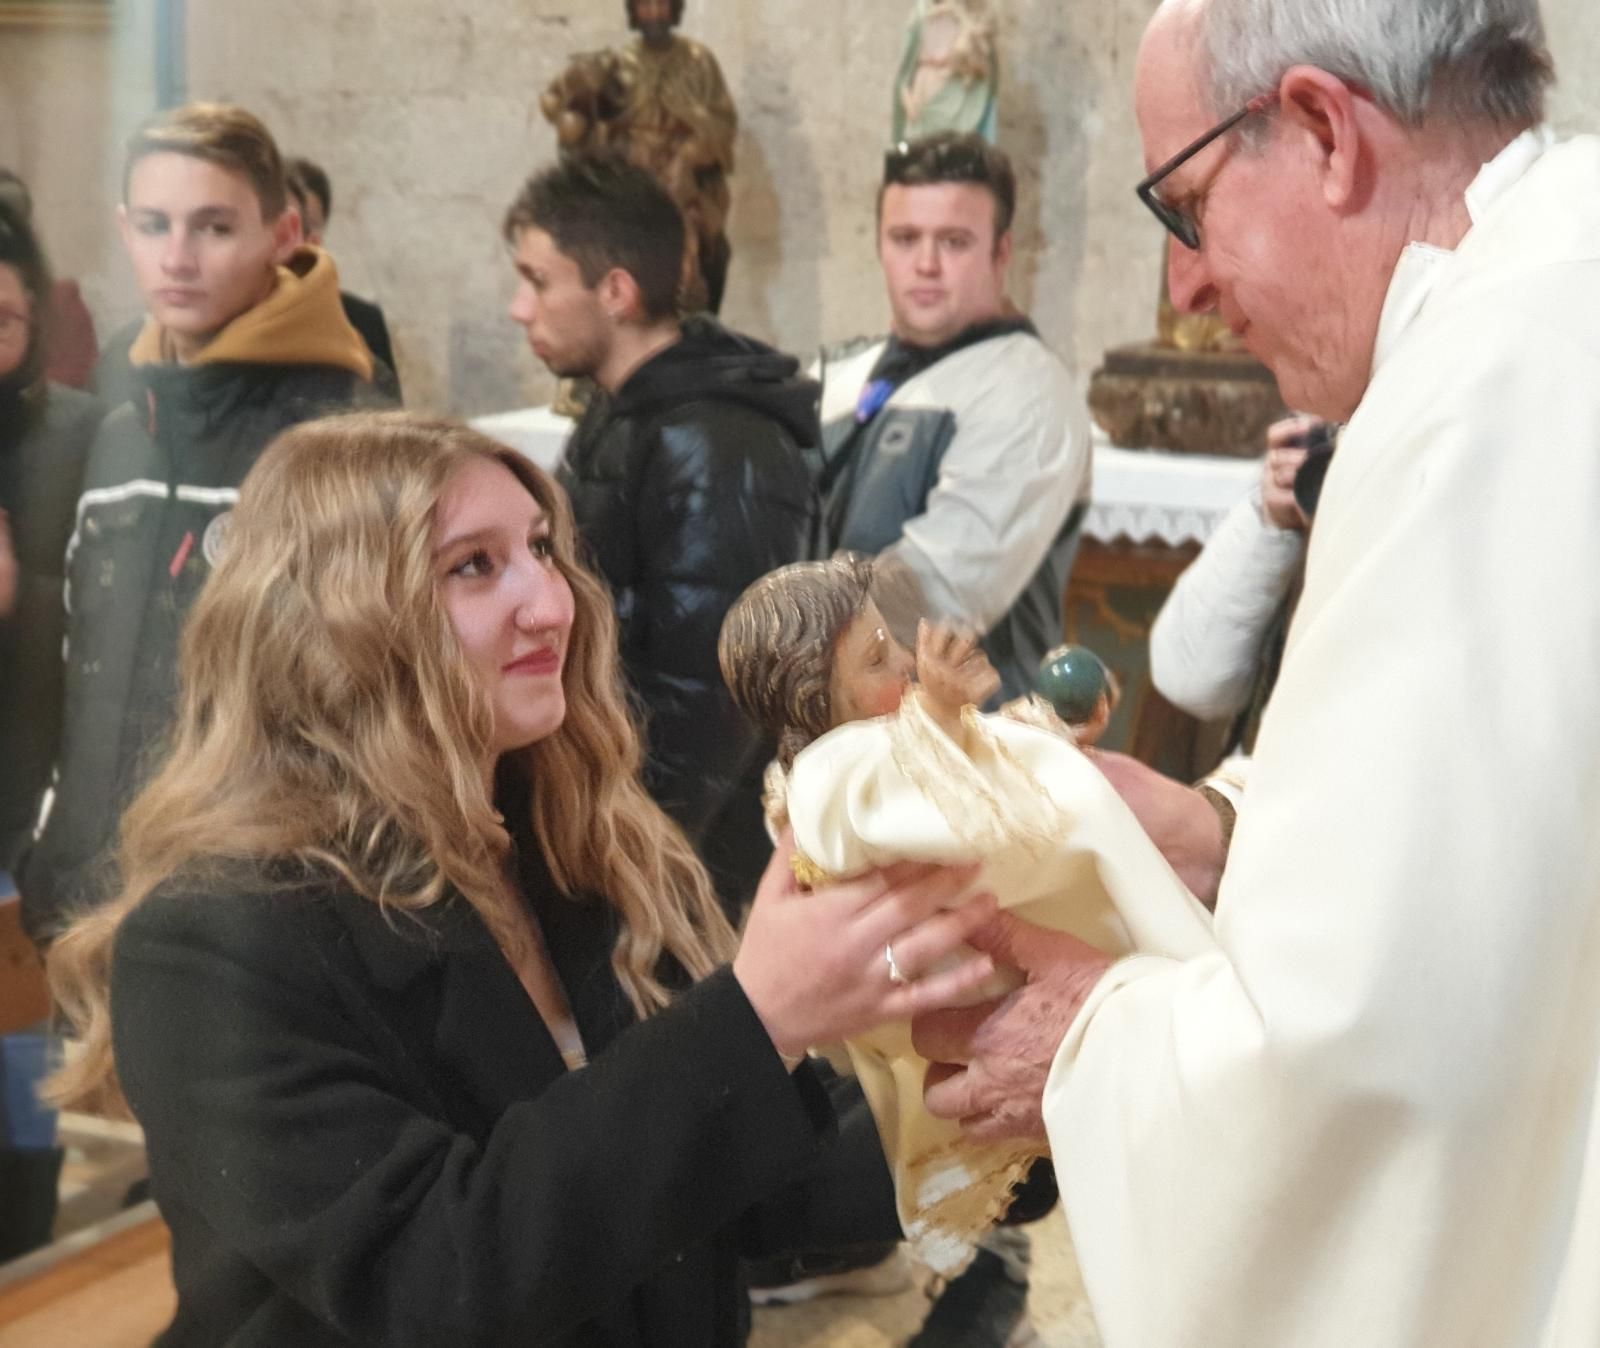 GALERÍA | Fiesta de las Candelas y coplas al gallo en Venialbo